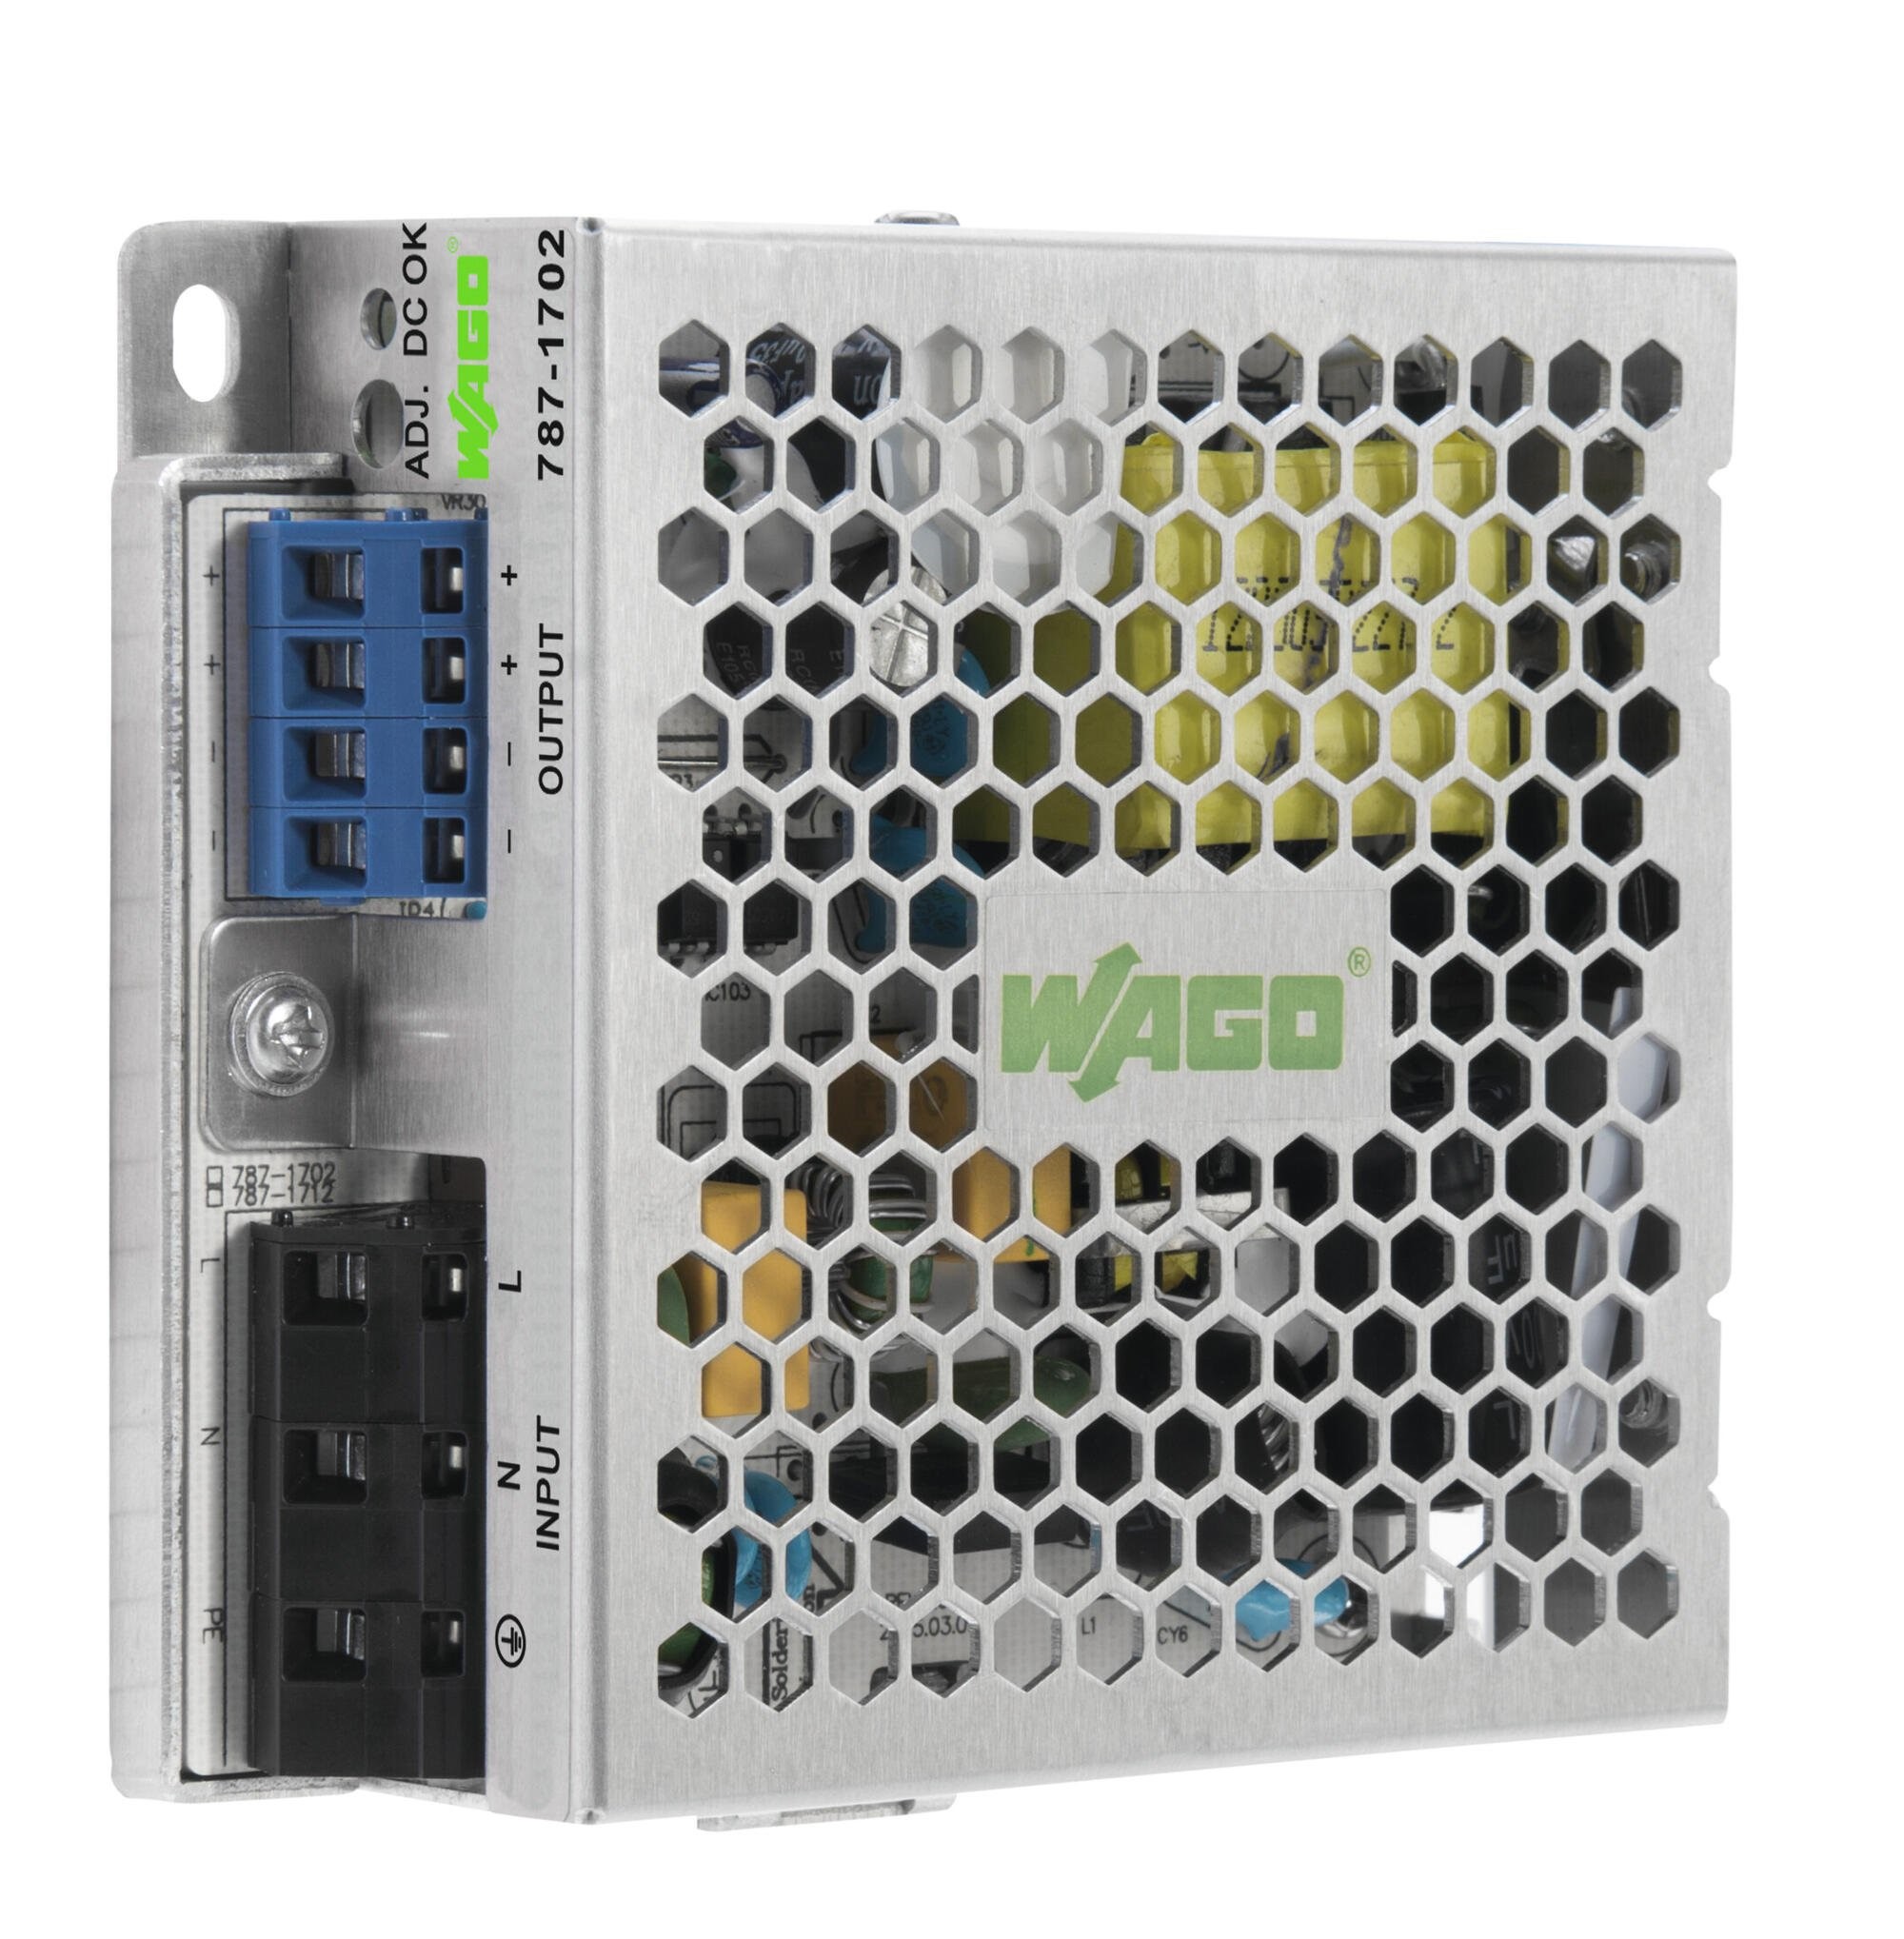 WAGO SMPSU; Eco; 24VDC Output; 1.25A; DC-OK LED